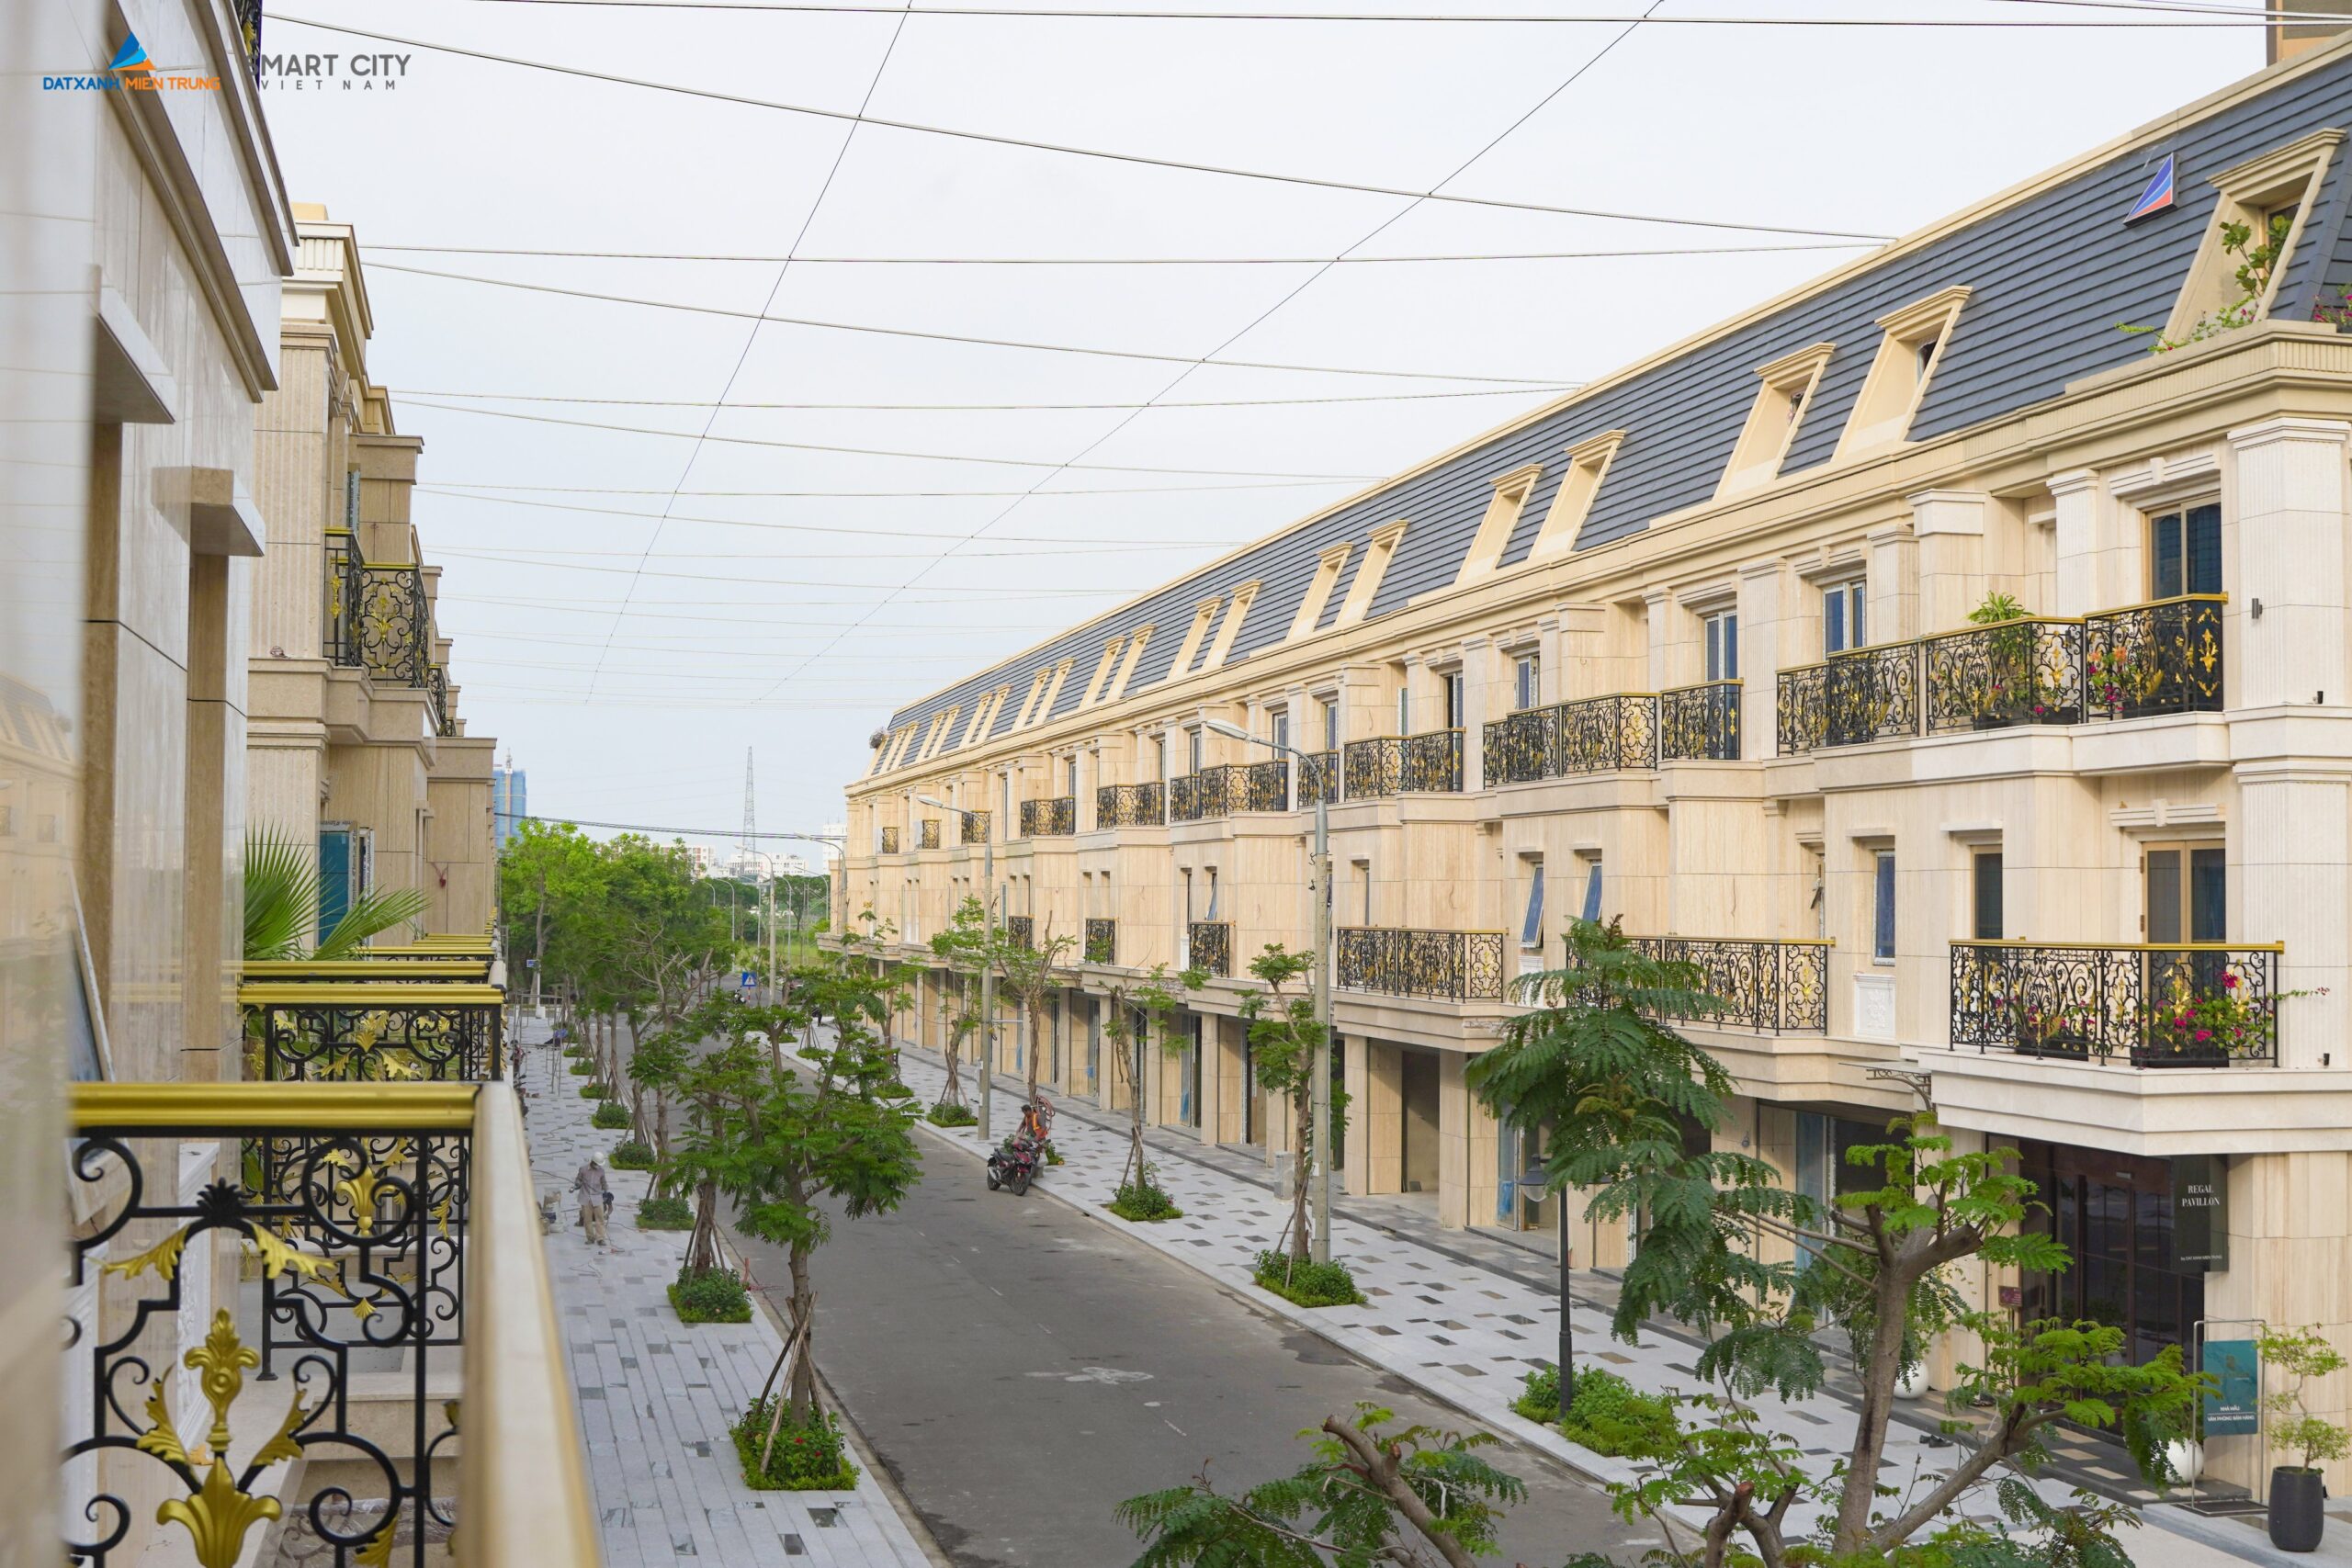 Chiến lược đầu tư (kỳ 1): Nhãn quan người tìm kiếm bất động sản cho Đất Xanh Miền Trung - Viet Nam Smart City